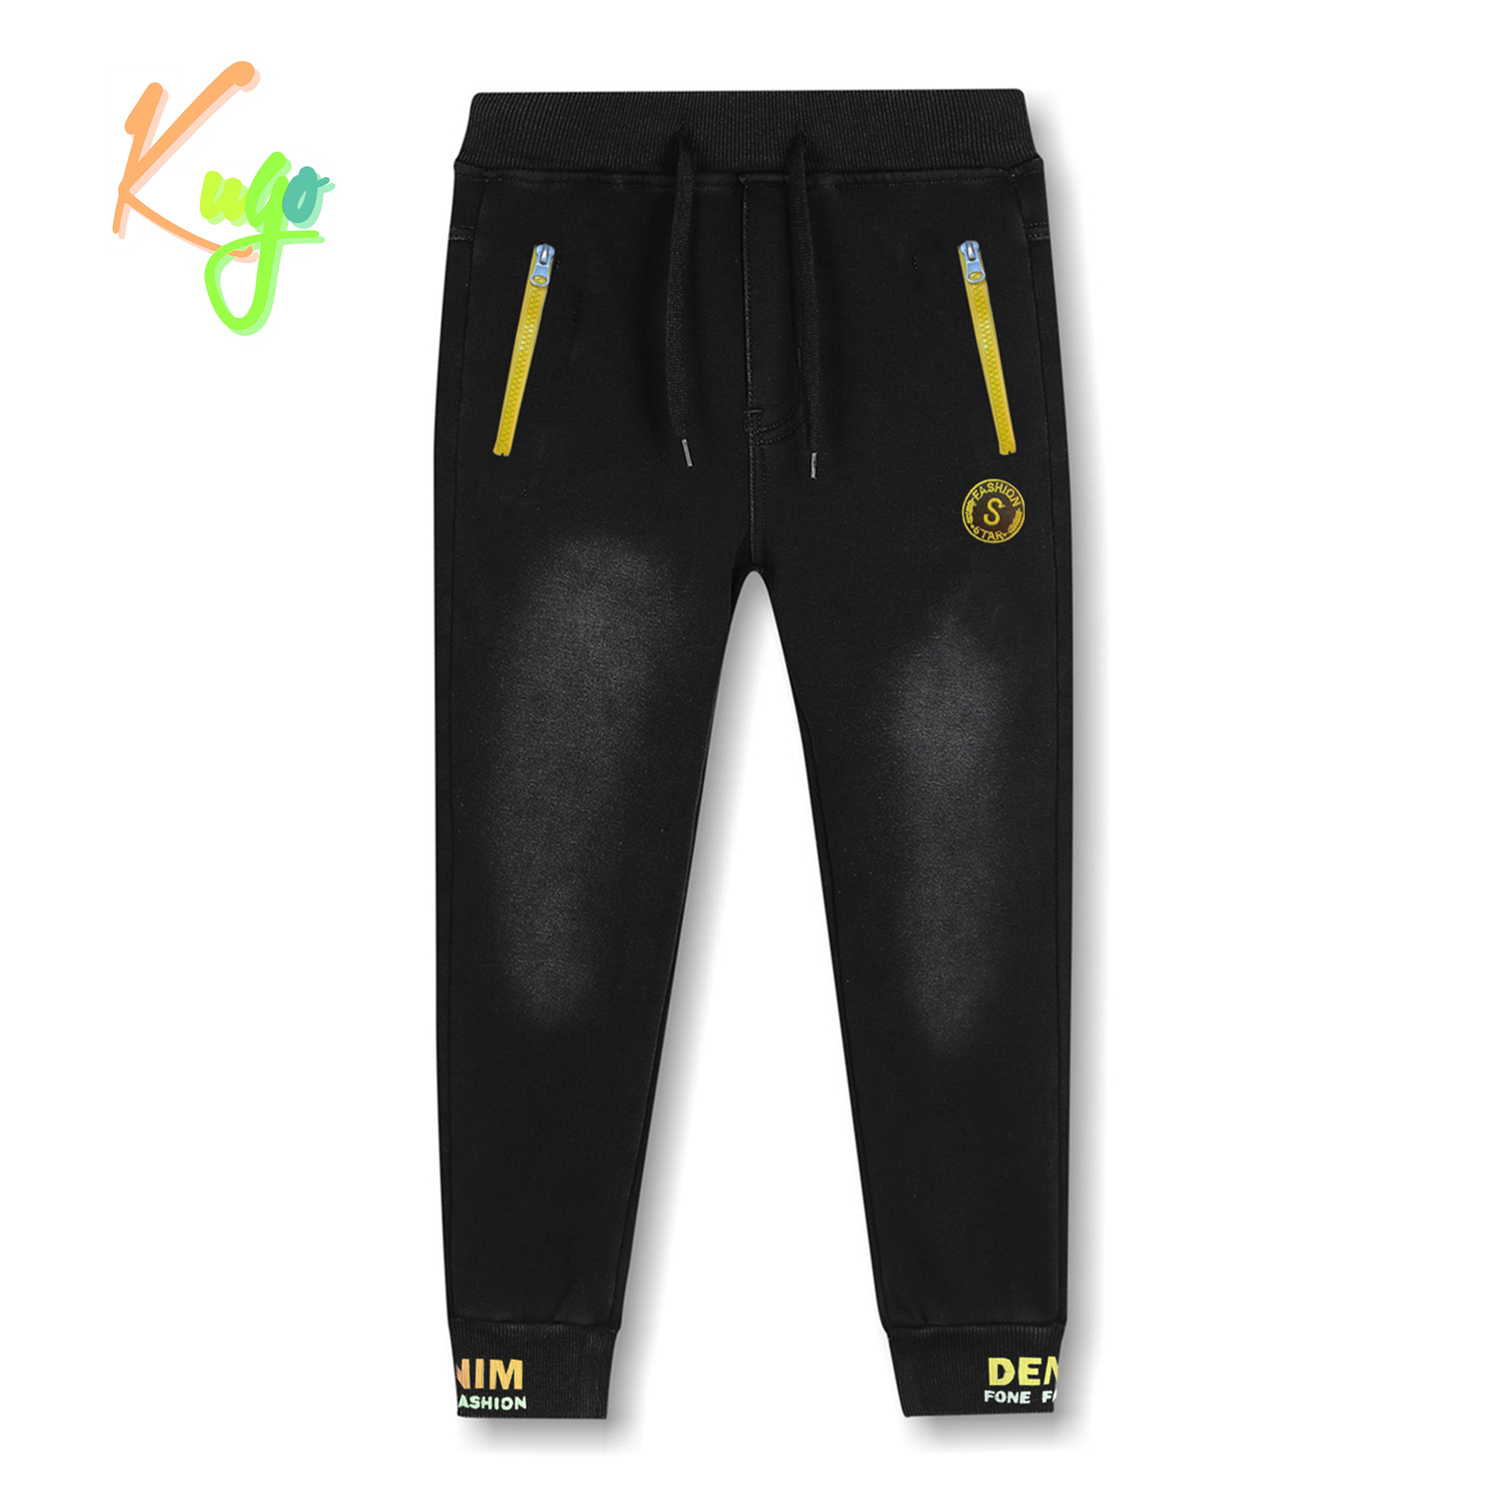 Chlapecké riflové kalhoty/ tepláky, zateplené - KUGO CK0922, černá Barva: Černá, Velikost: 116